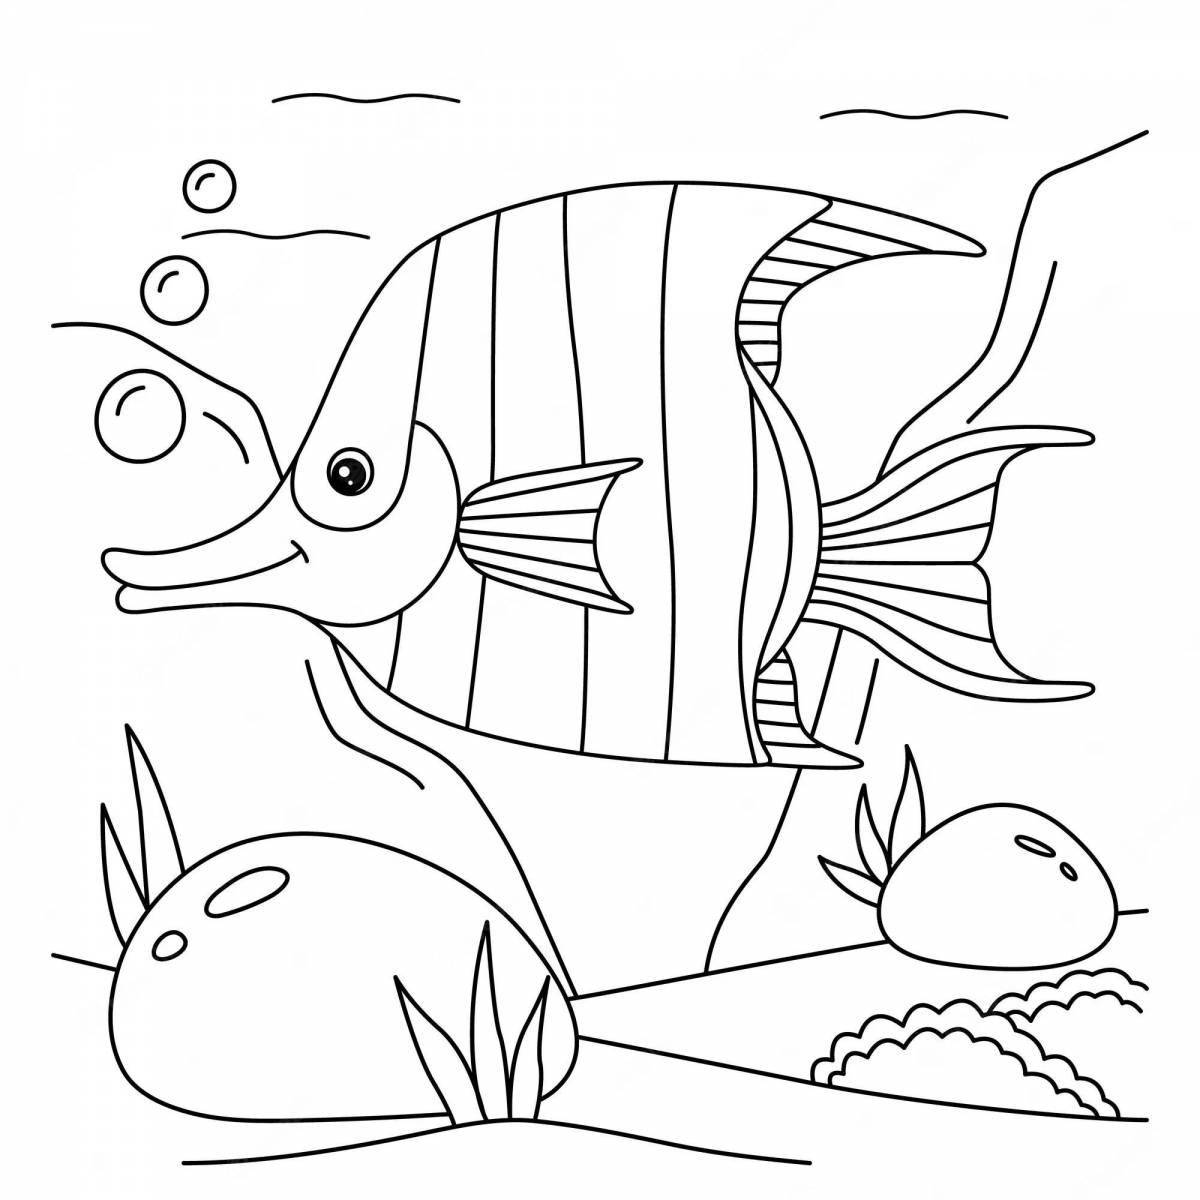 Красочная страница-раскраска аквариумных рыбок для детей 5-6 лет